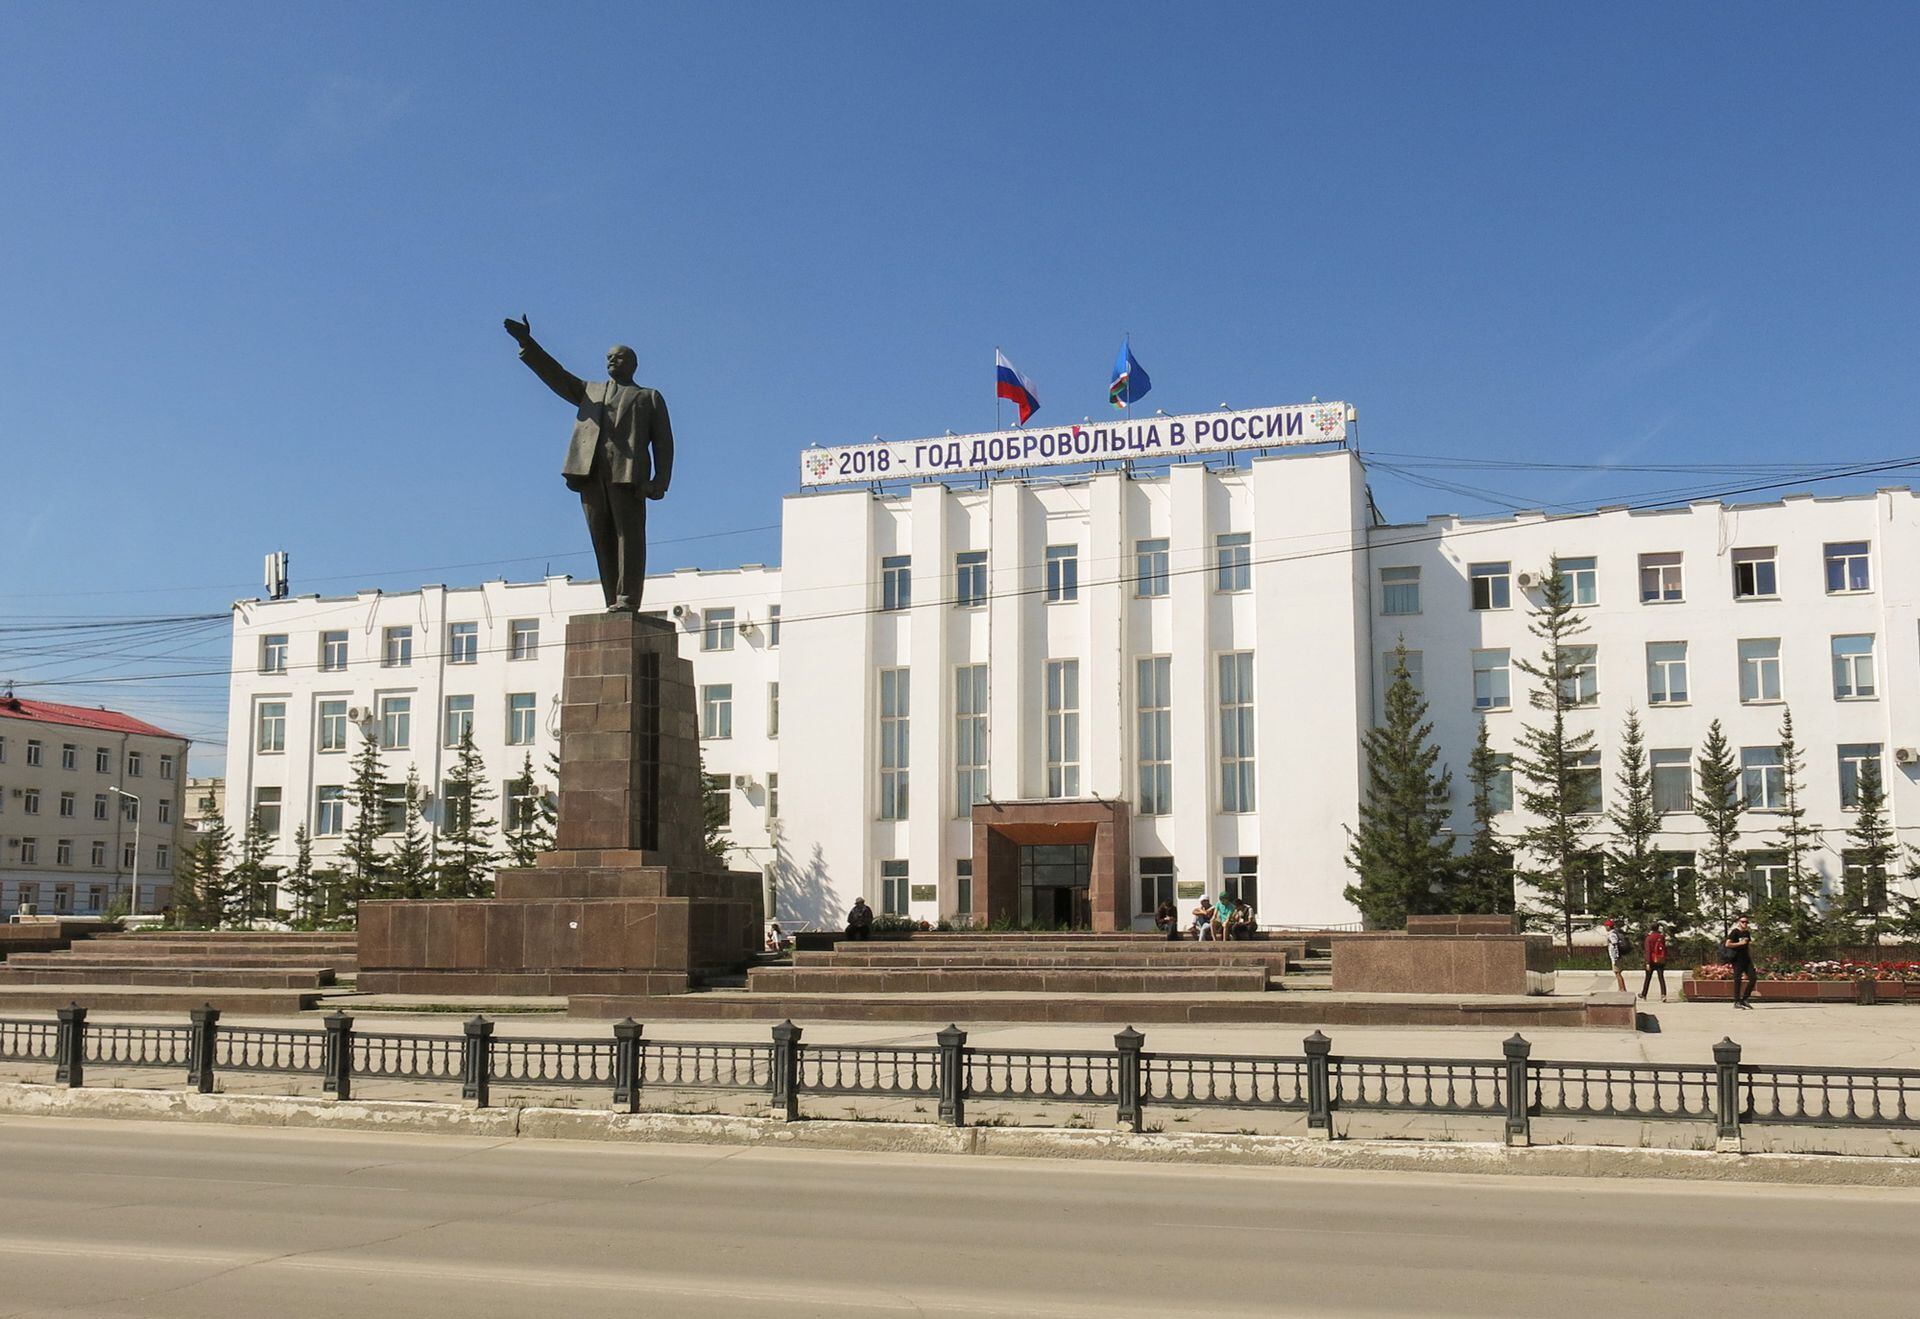 La figura de Lenin, siempre presente. Las construcciones son todas elevadas, sobre pilares (ocultos o a la vista).